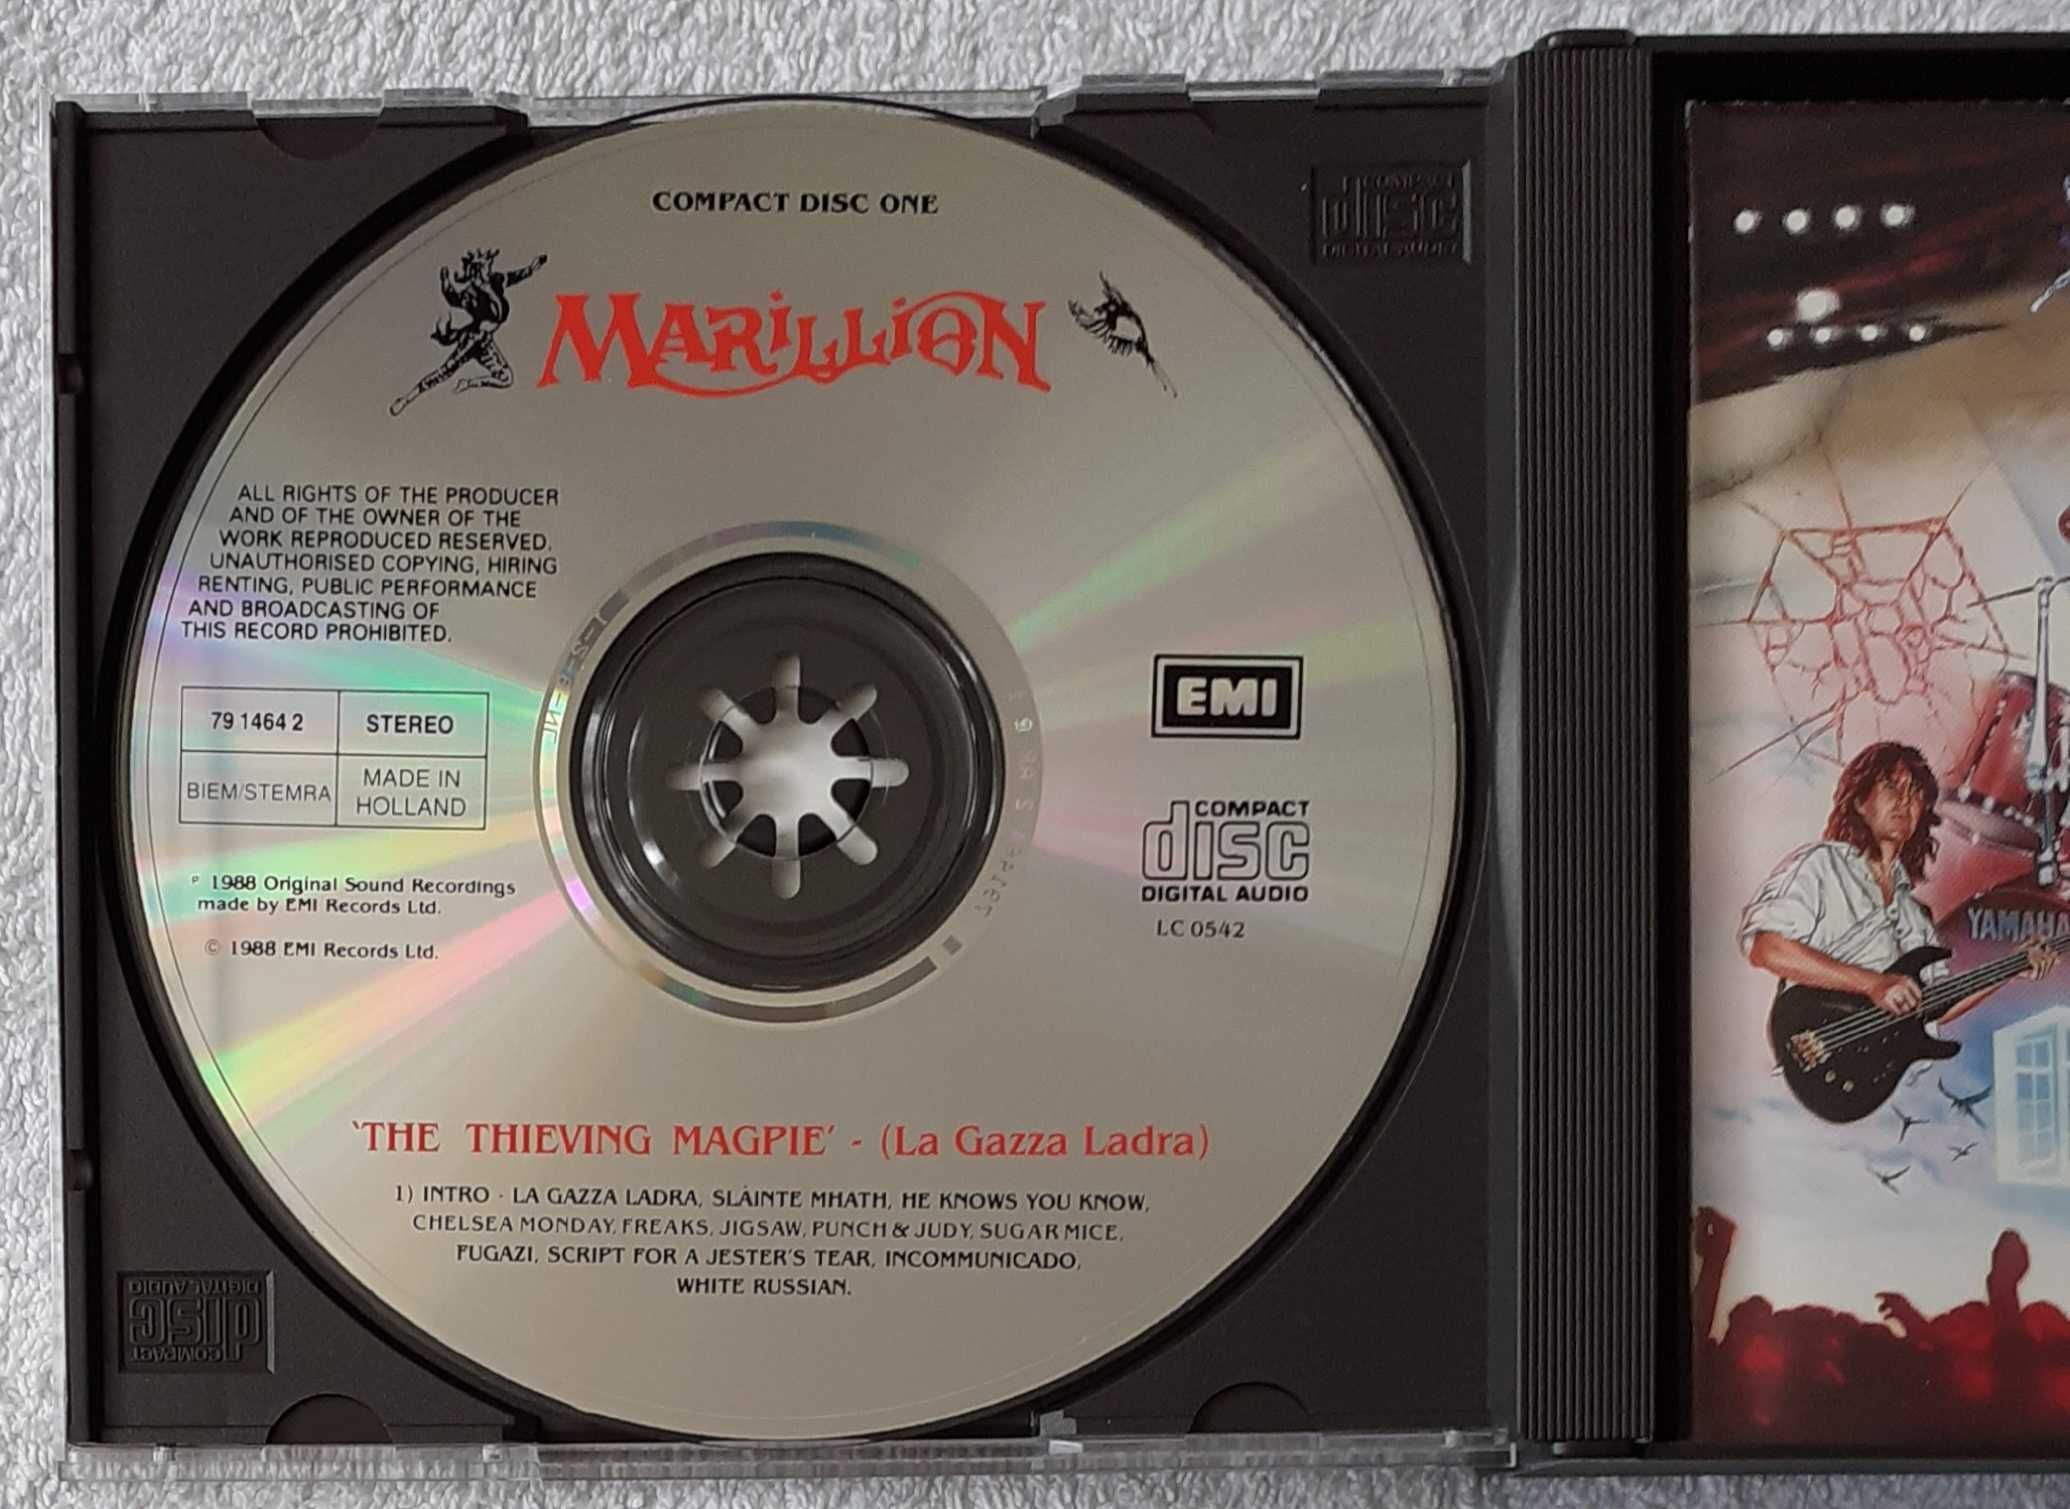 Marillion – The Thieving Magpie (La Gazza Ladra) (2 x CD) plus GRATIS